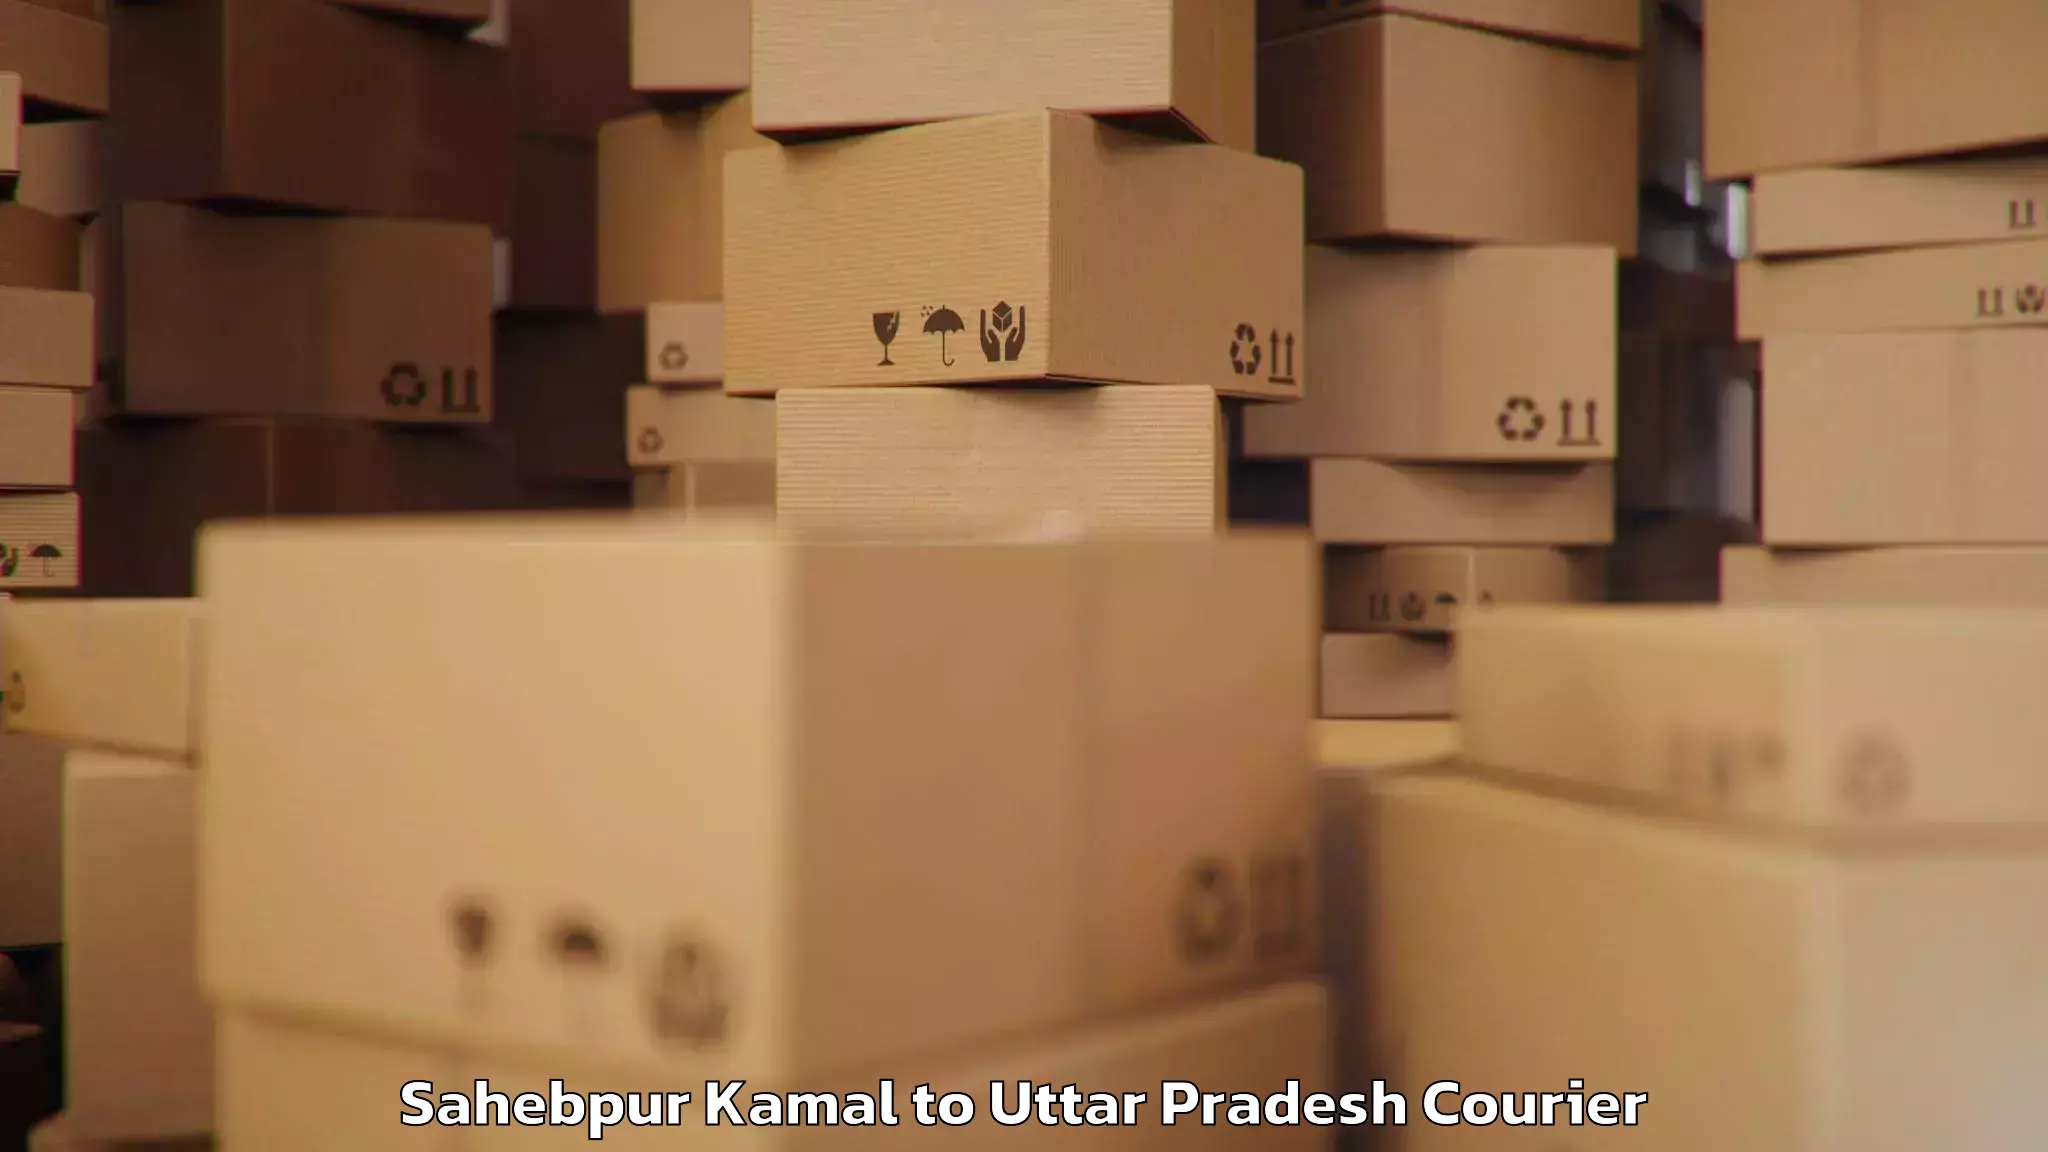 Baggage transport updates Sahebpur Kamal to Uttar Pradesh